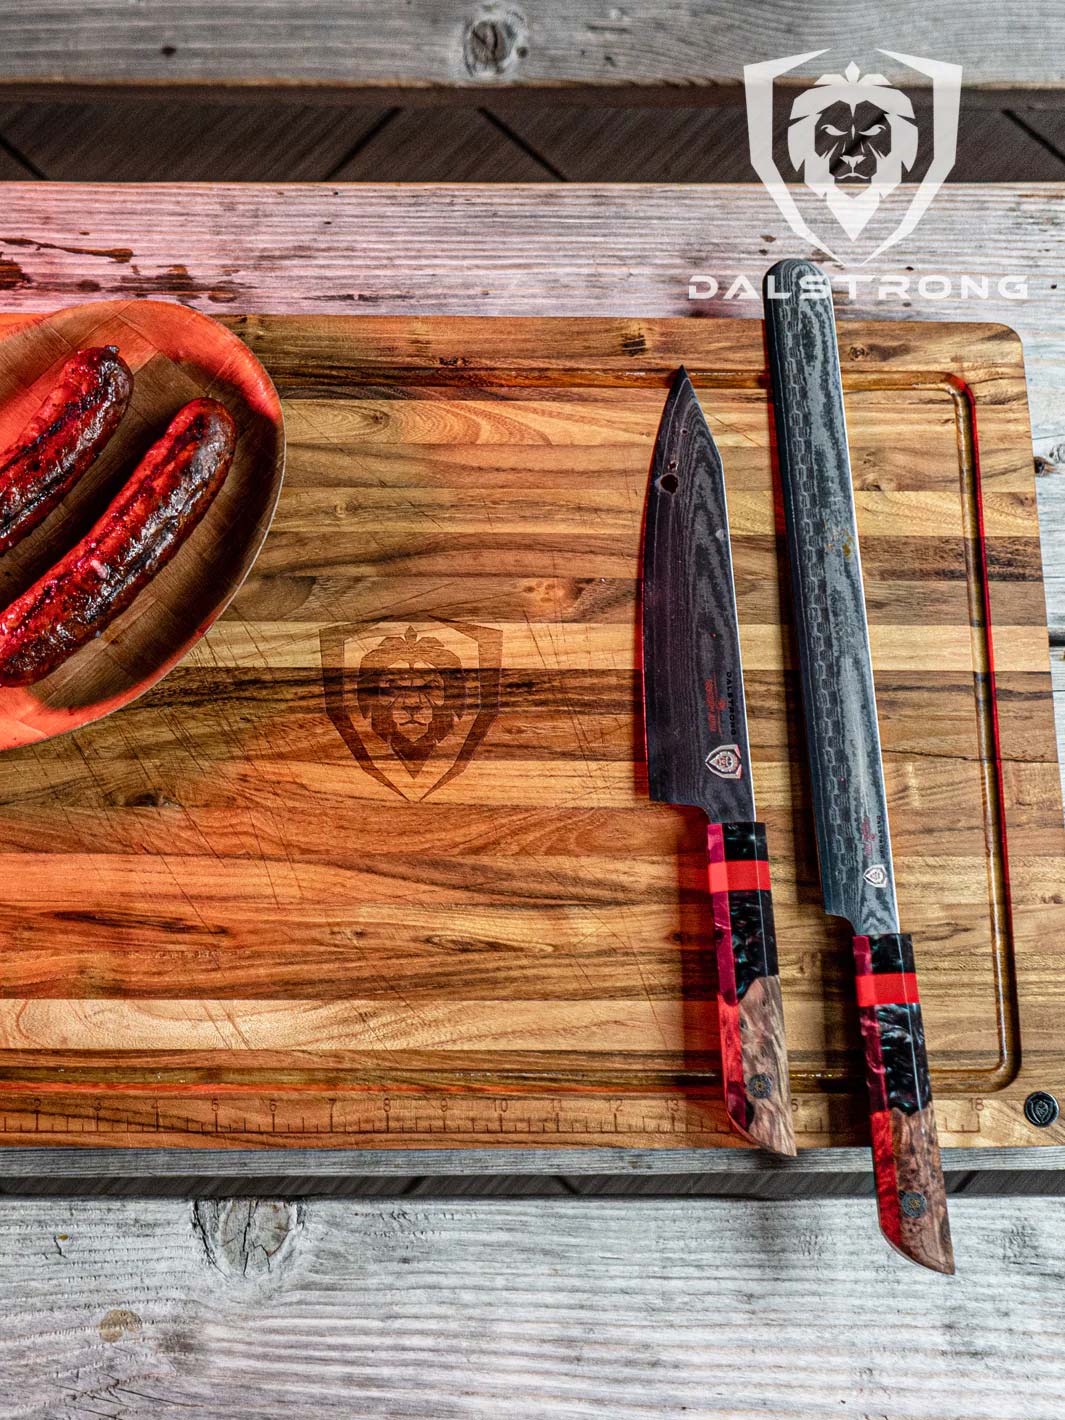 Slicer Knife 12" | Firestorm Alpha Series | Dalstrong ©